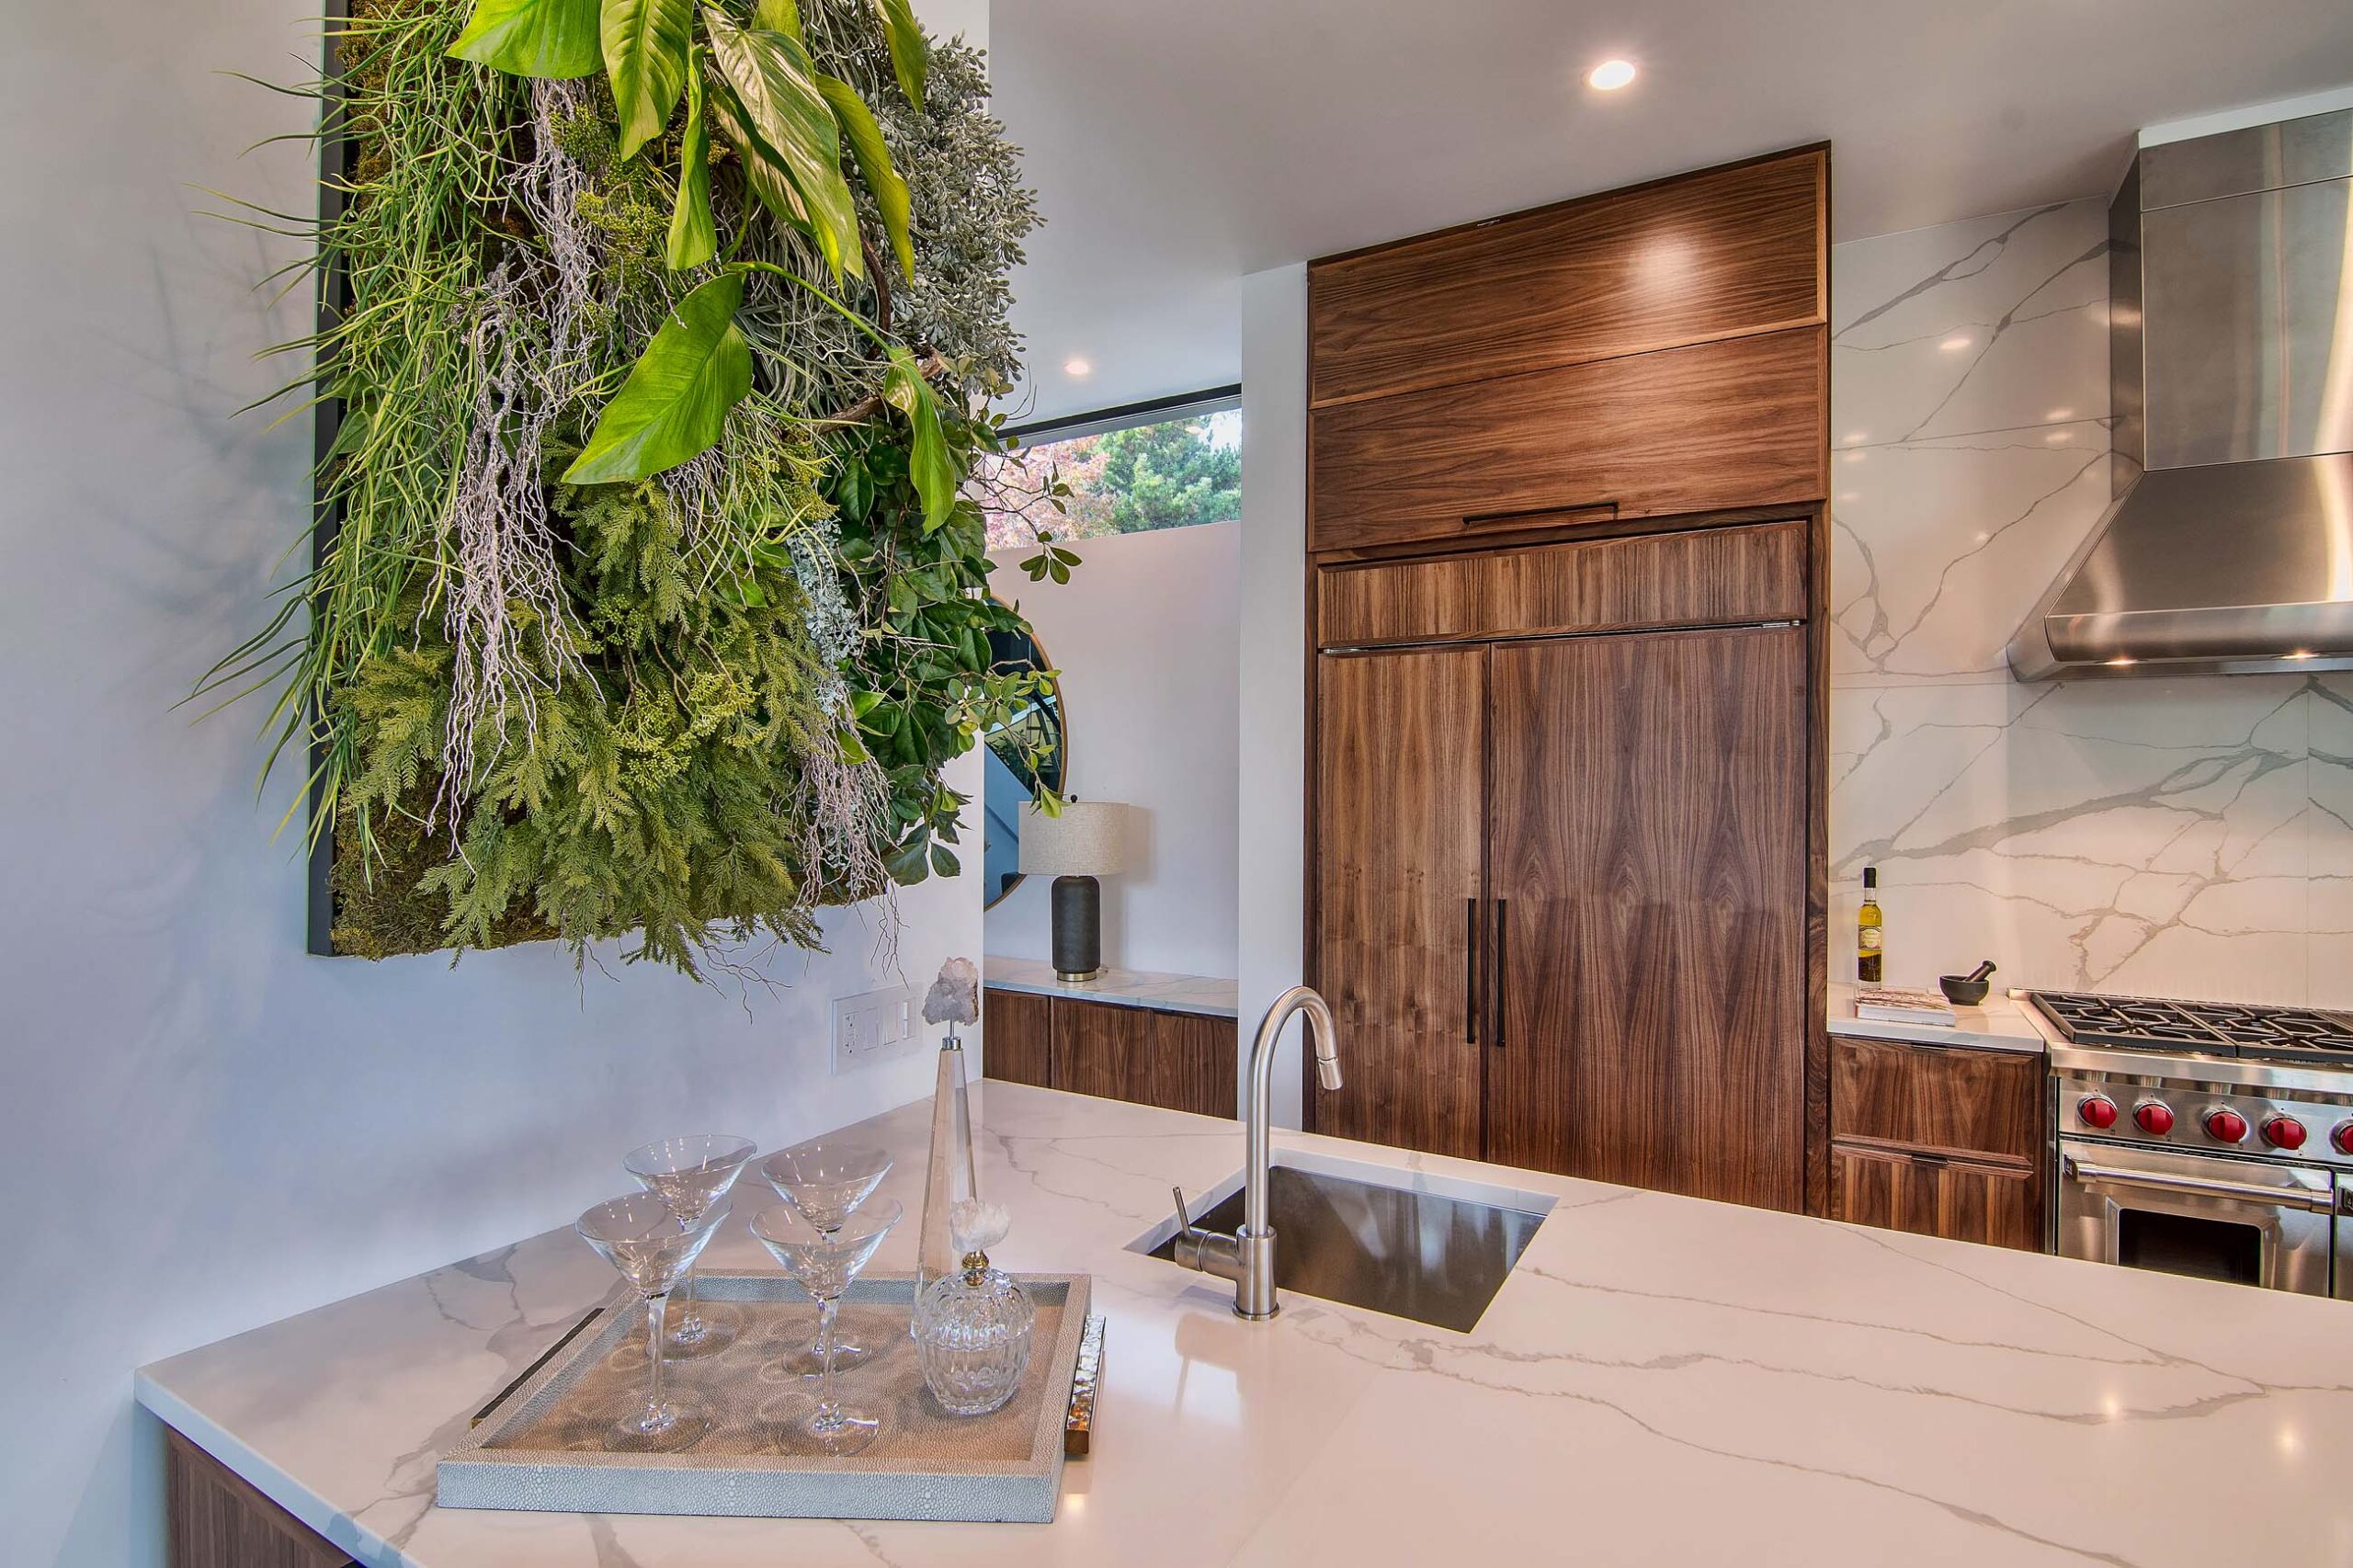 Minimalist kitchen in modern California home